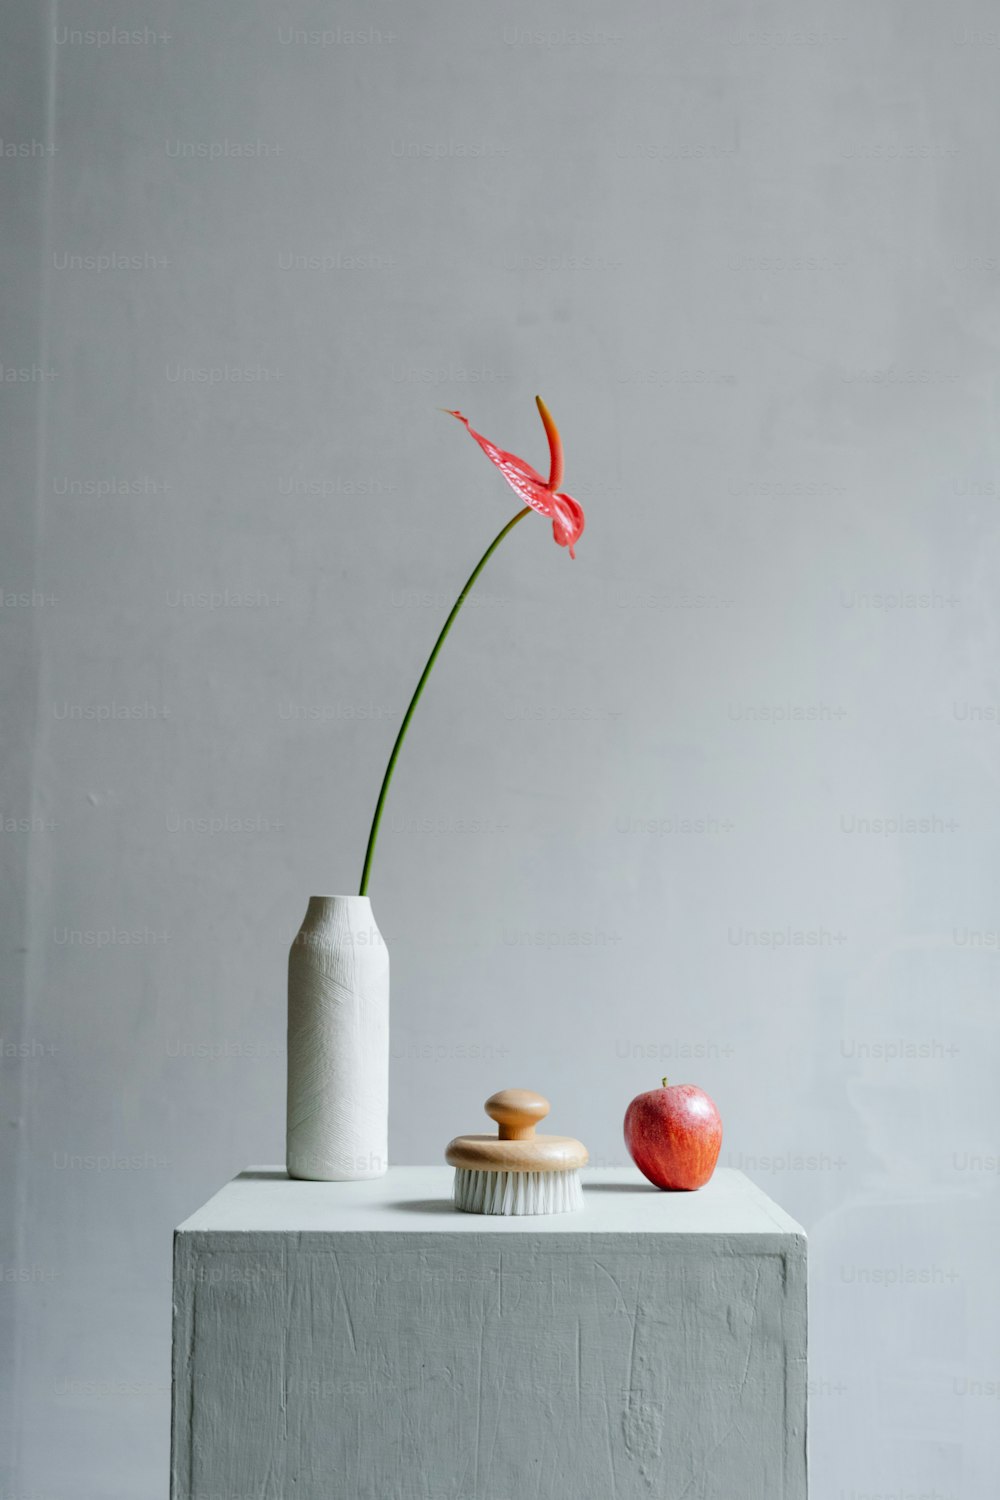 eine Vase mit einer Blume darin neben einem Apfel